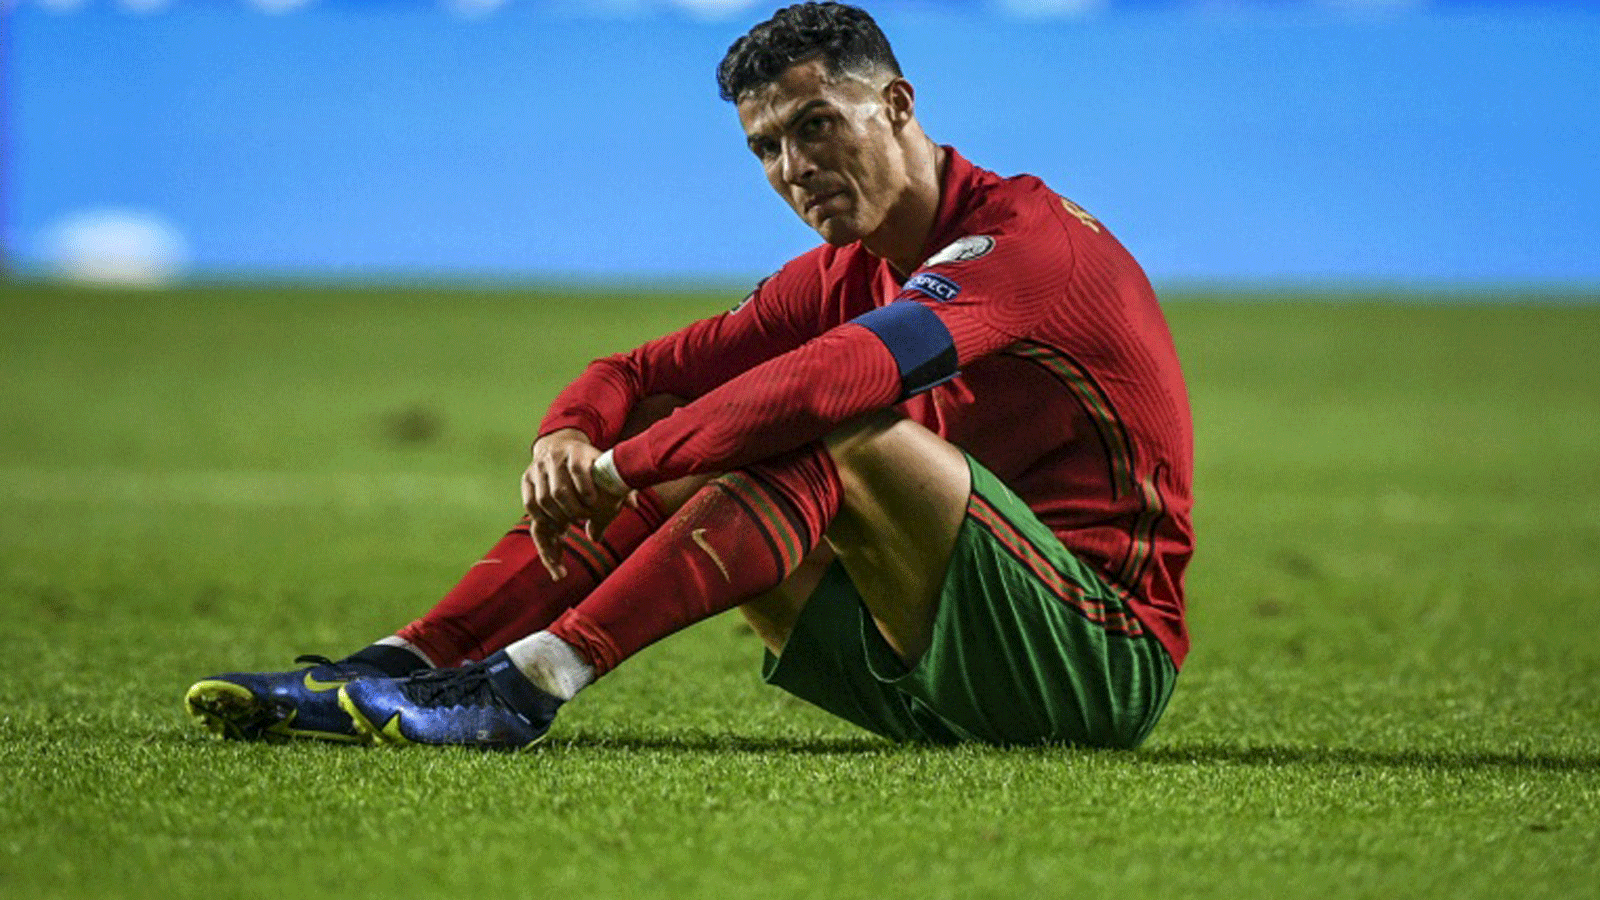 البرتغالي كريستيانو رونالدو غاضب بعد فشل بلاده في التأهل المباشر الى نهائيات كأس العالم 2022 في قطر، بسبب خسارتها امام صربيا